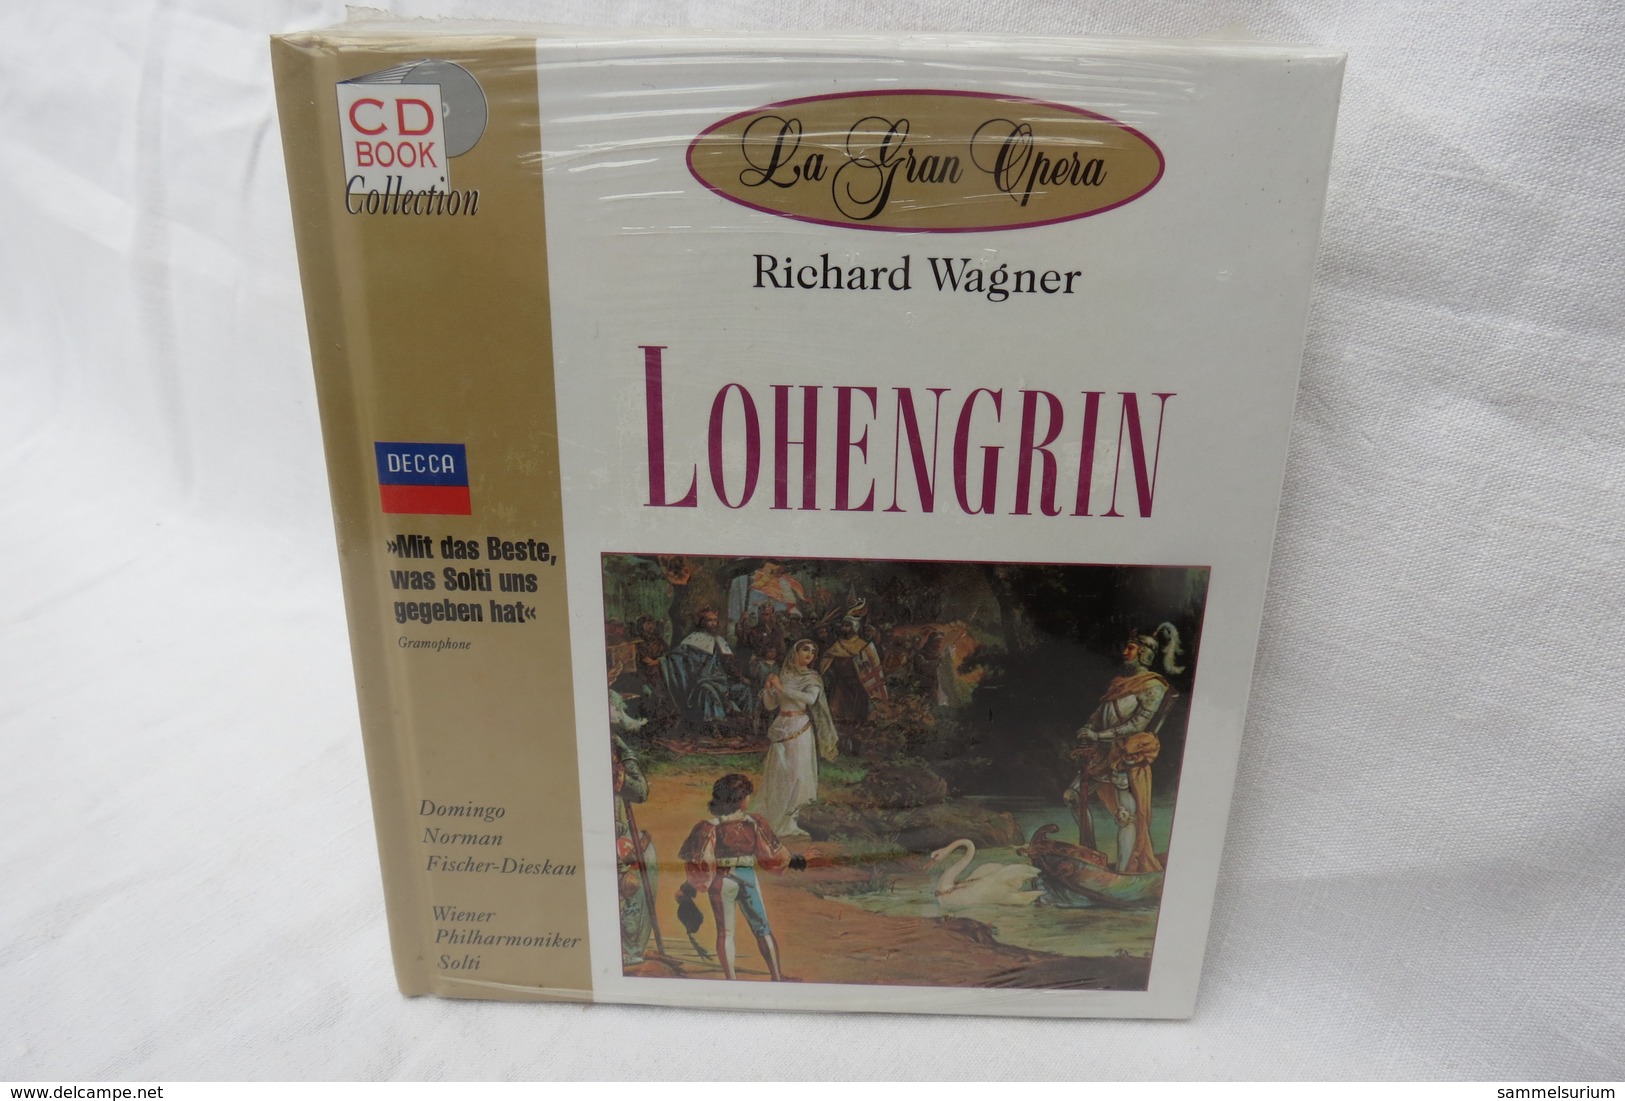 CD "Lohengrin / Richard Wagner" Mit Buch Aus Der CD Book Collection (ungeöffnet, Original Eingeschweißt) - Opéra & Opérette